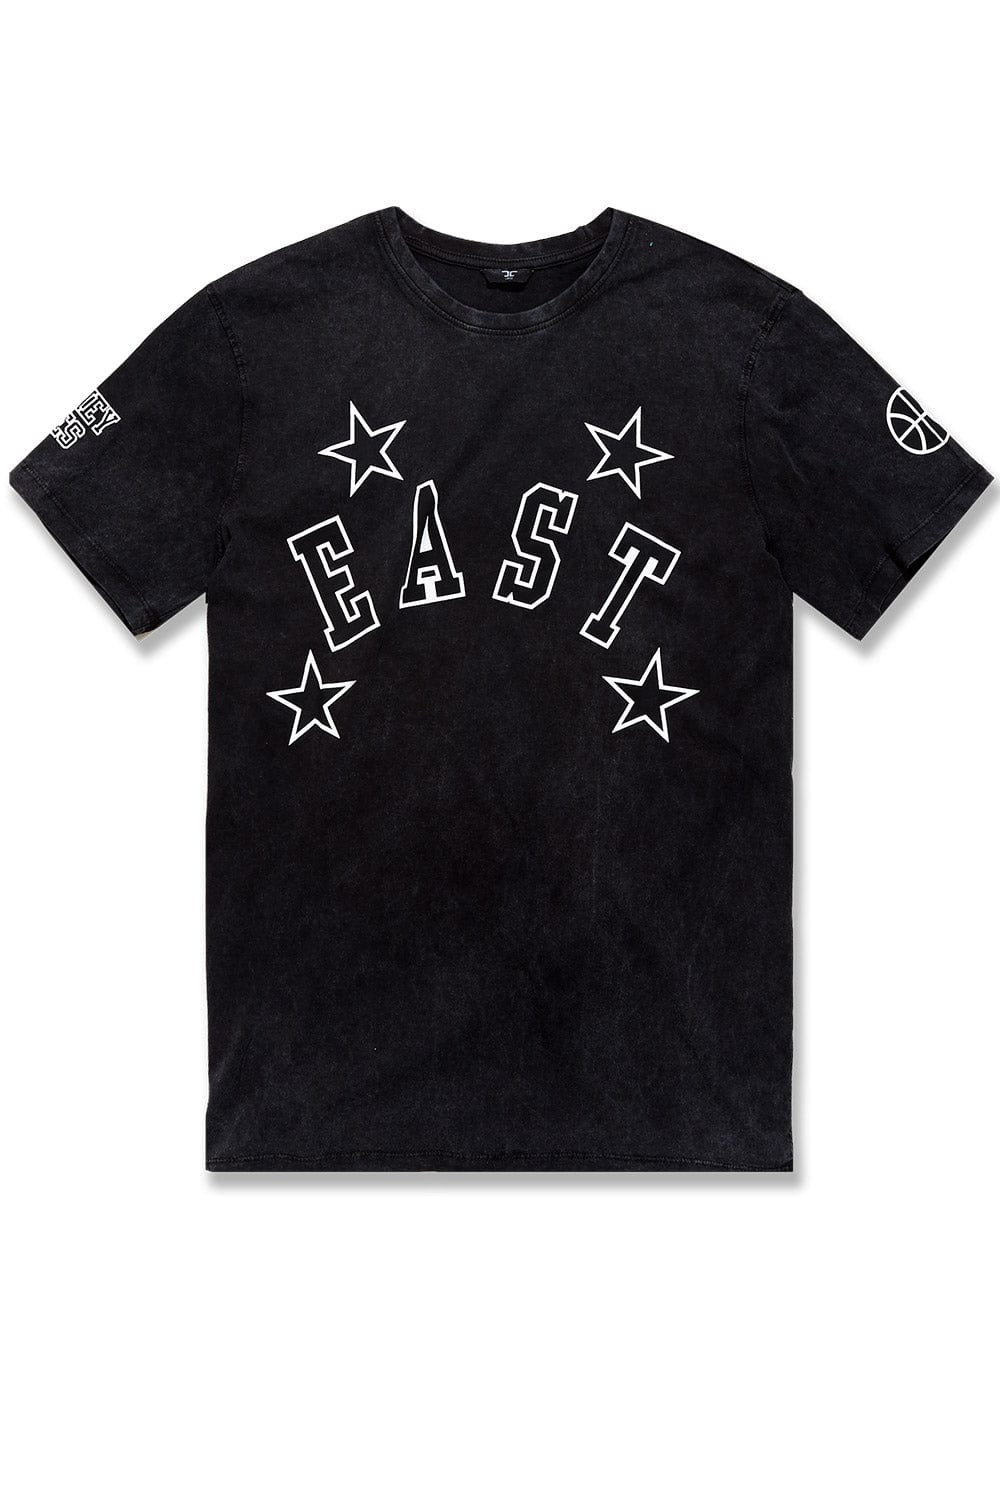 Jordan Craig Beast Coast T-Shirt (Brooklyn) S / Brooklyn